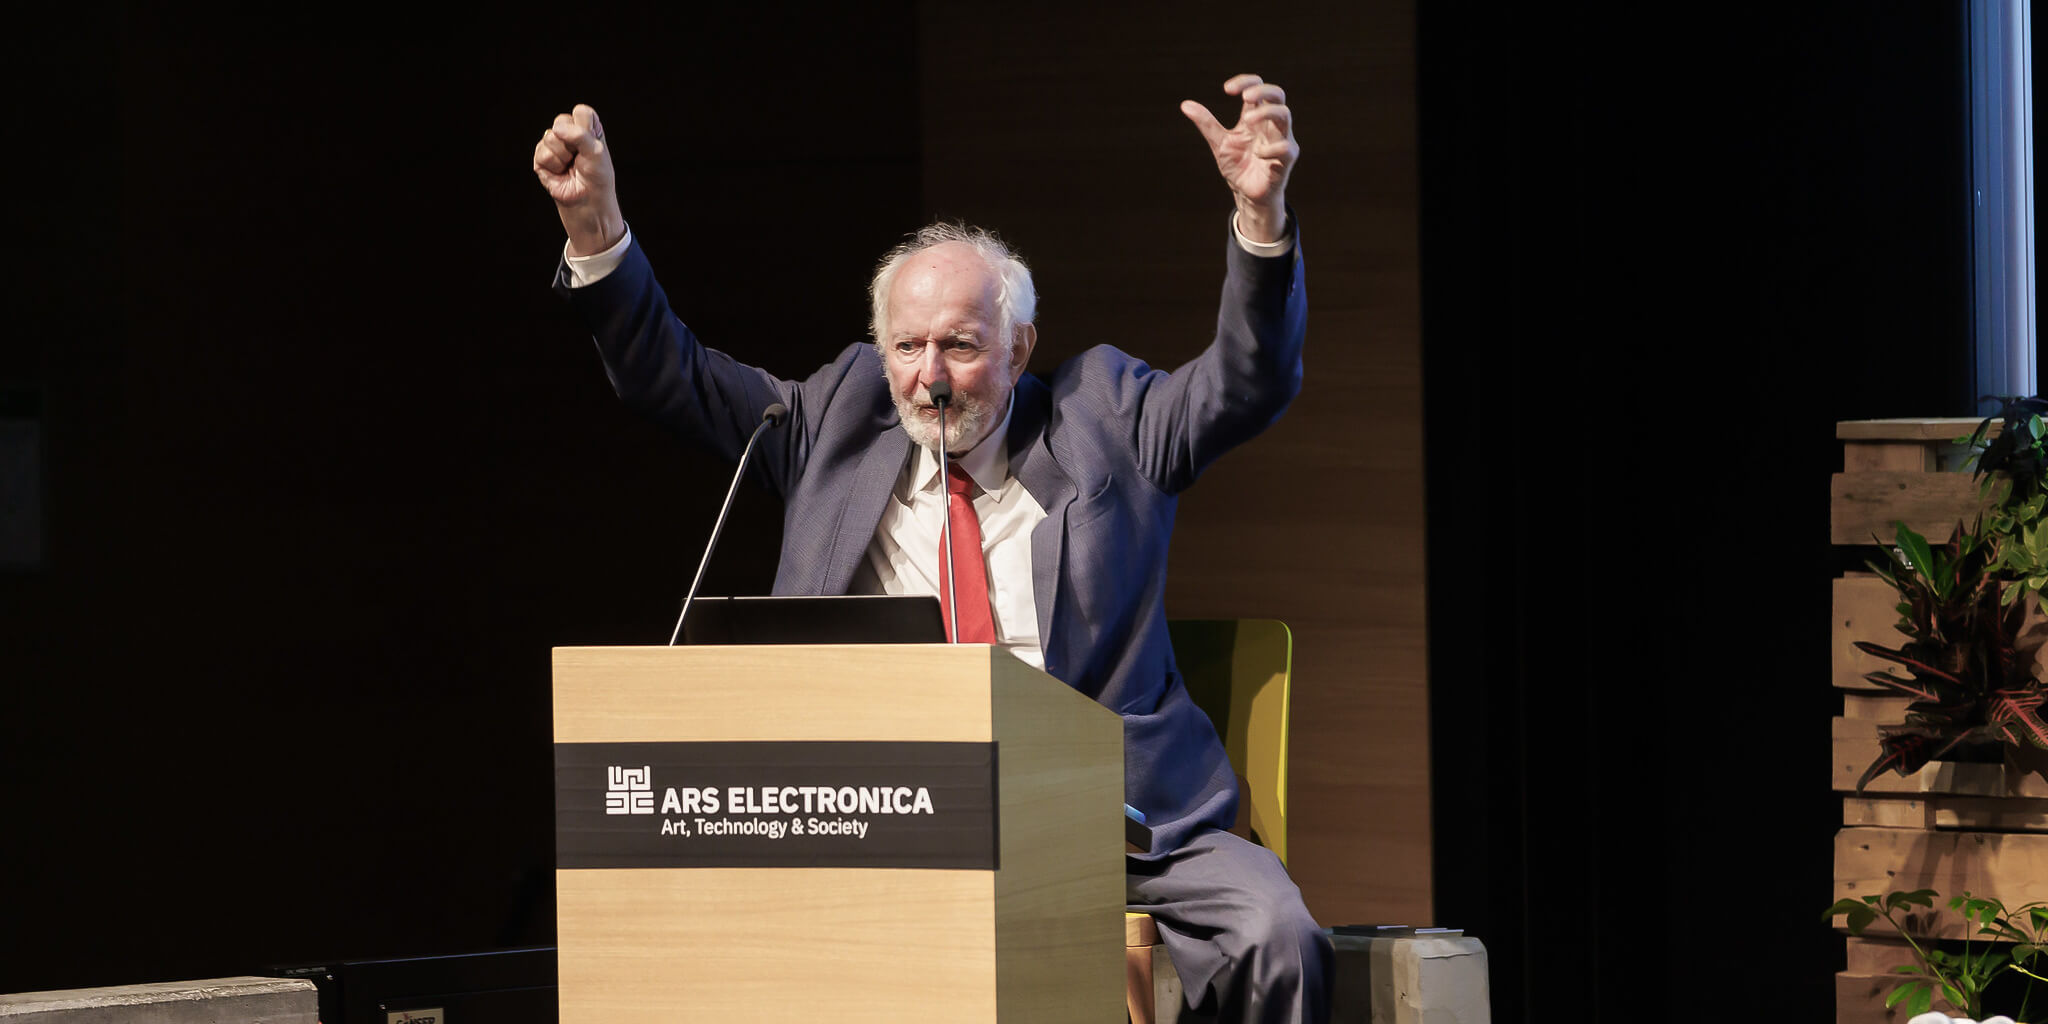 Keynote by Ernst Ulrich von Weizsäcker